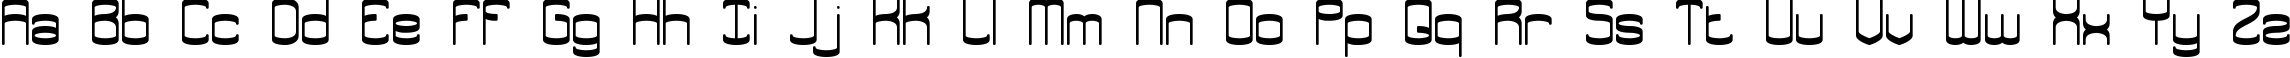 Пример написания английского алфавита шрифтом Enthuse Solid BRK